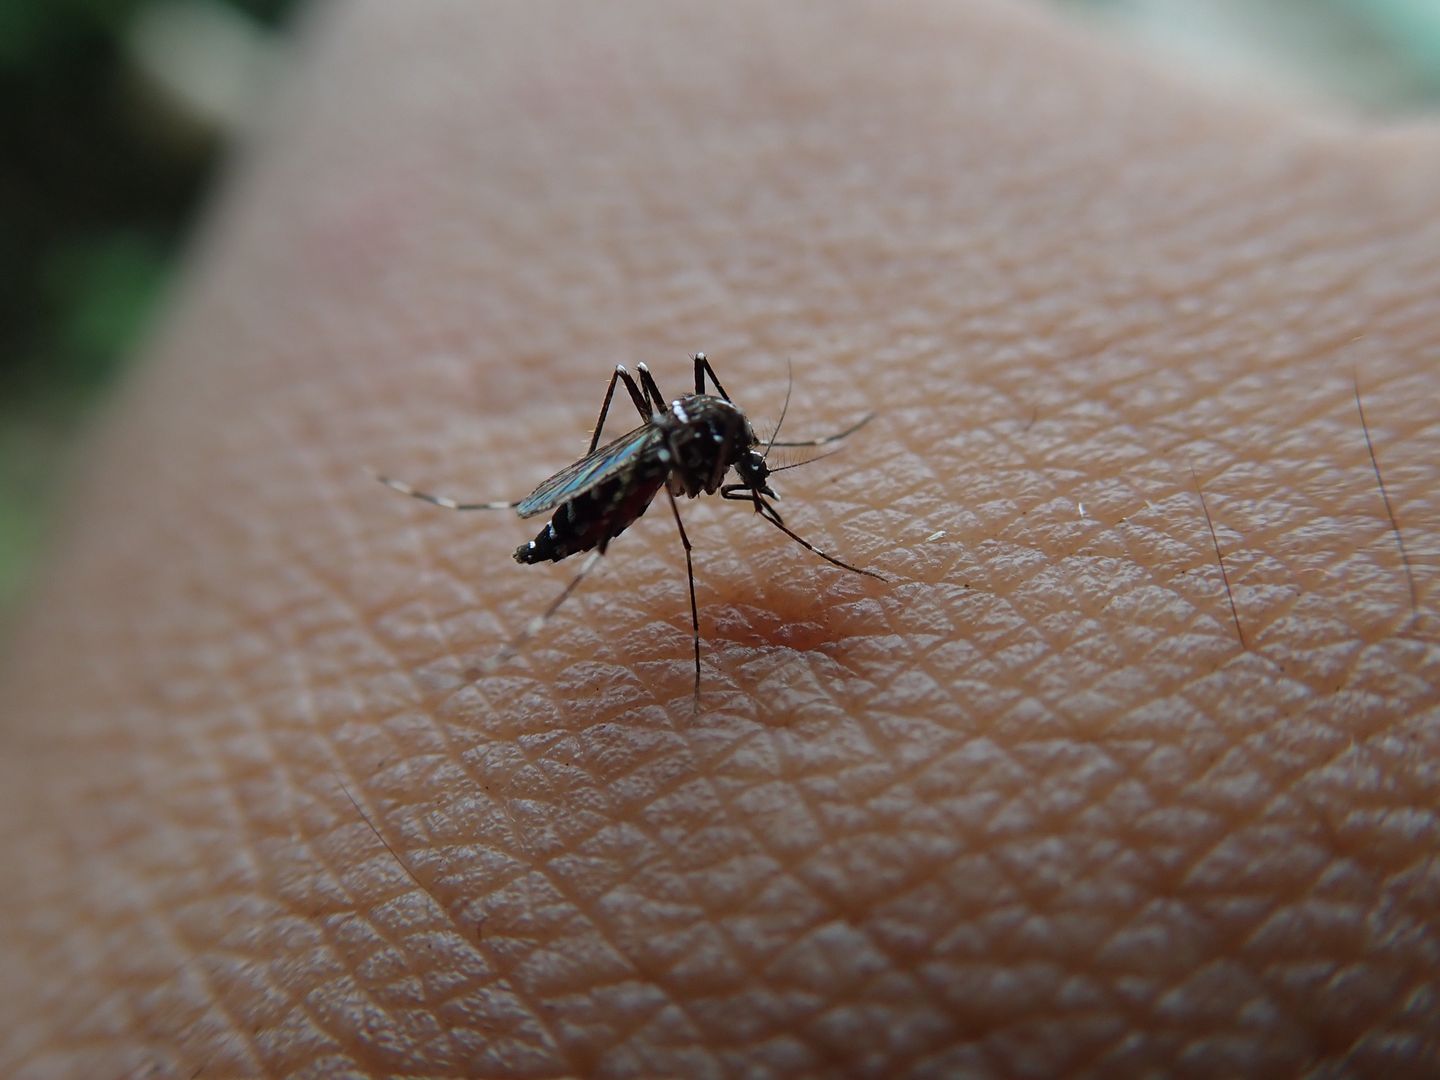 Pojawia się po ukąszeniu komara. Znak, by dzwonić po pogotowie